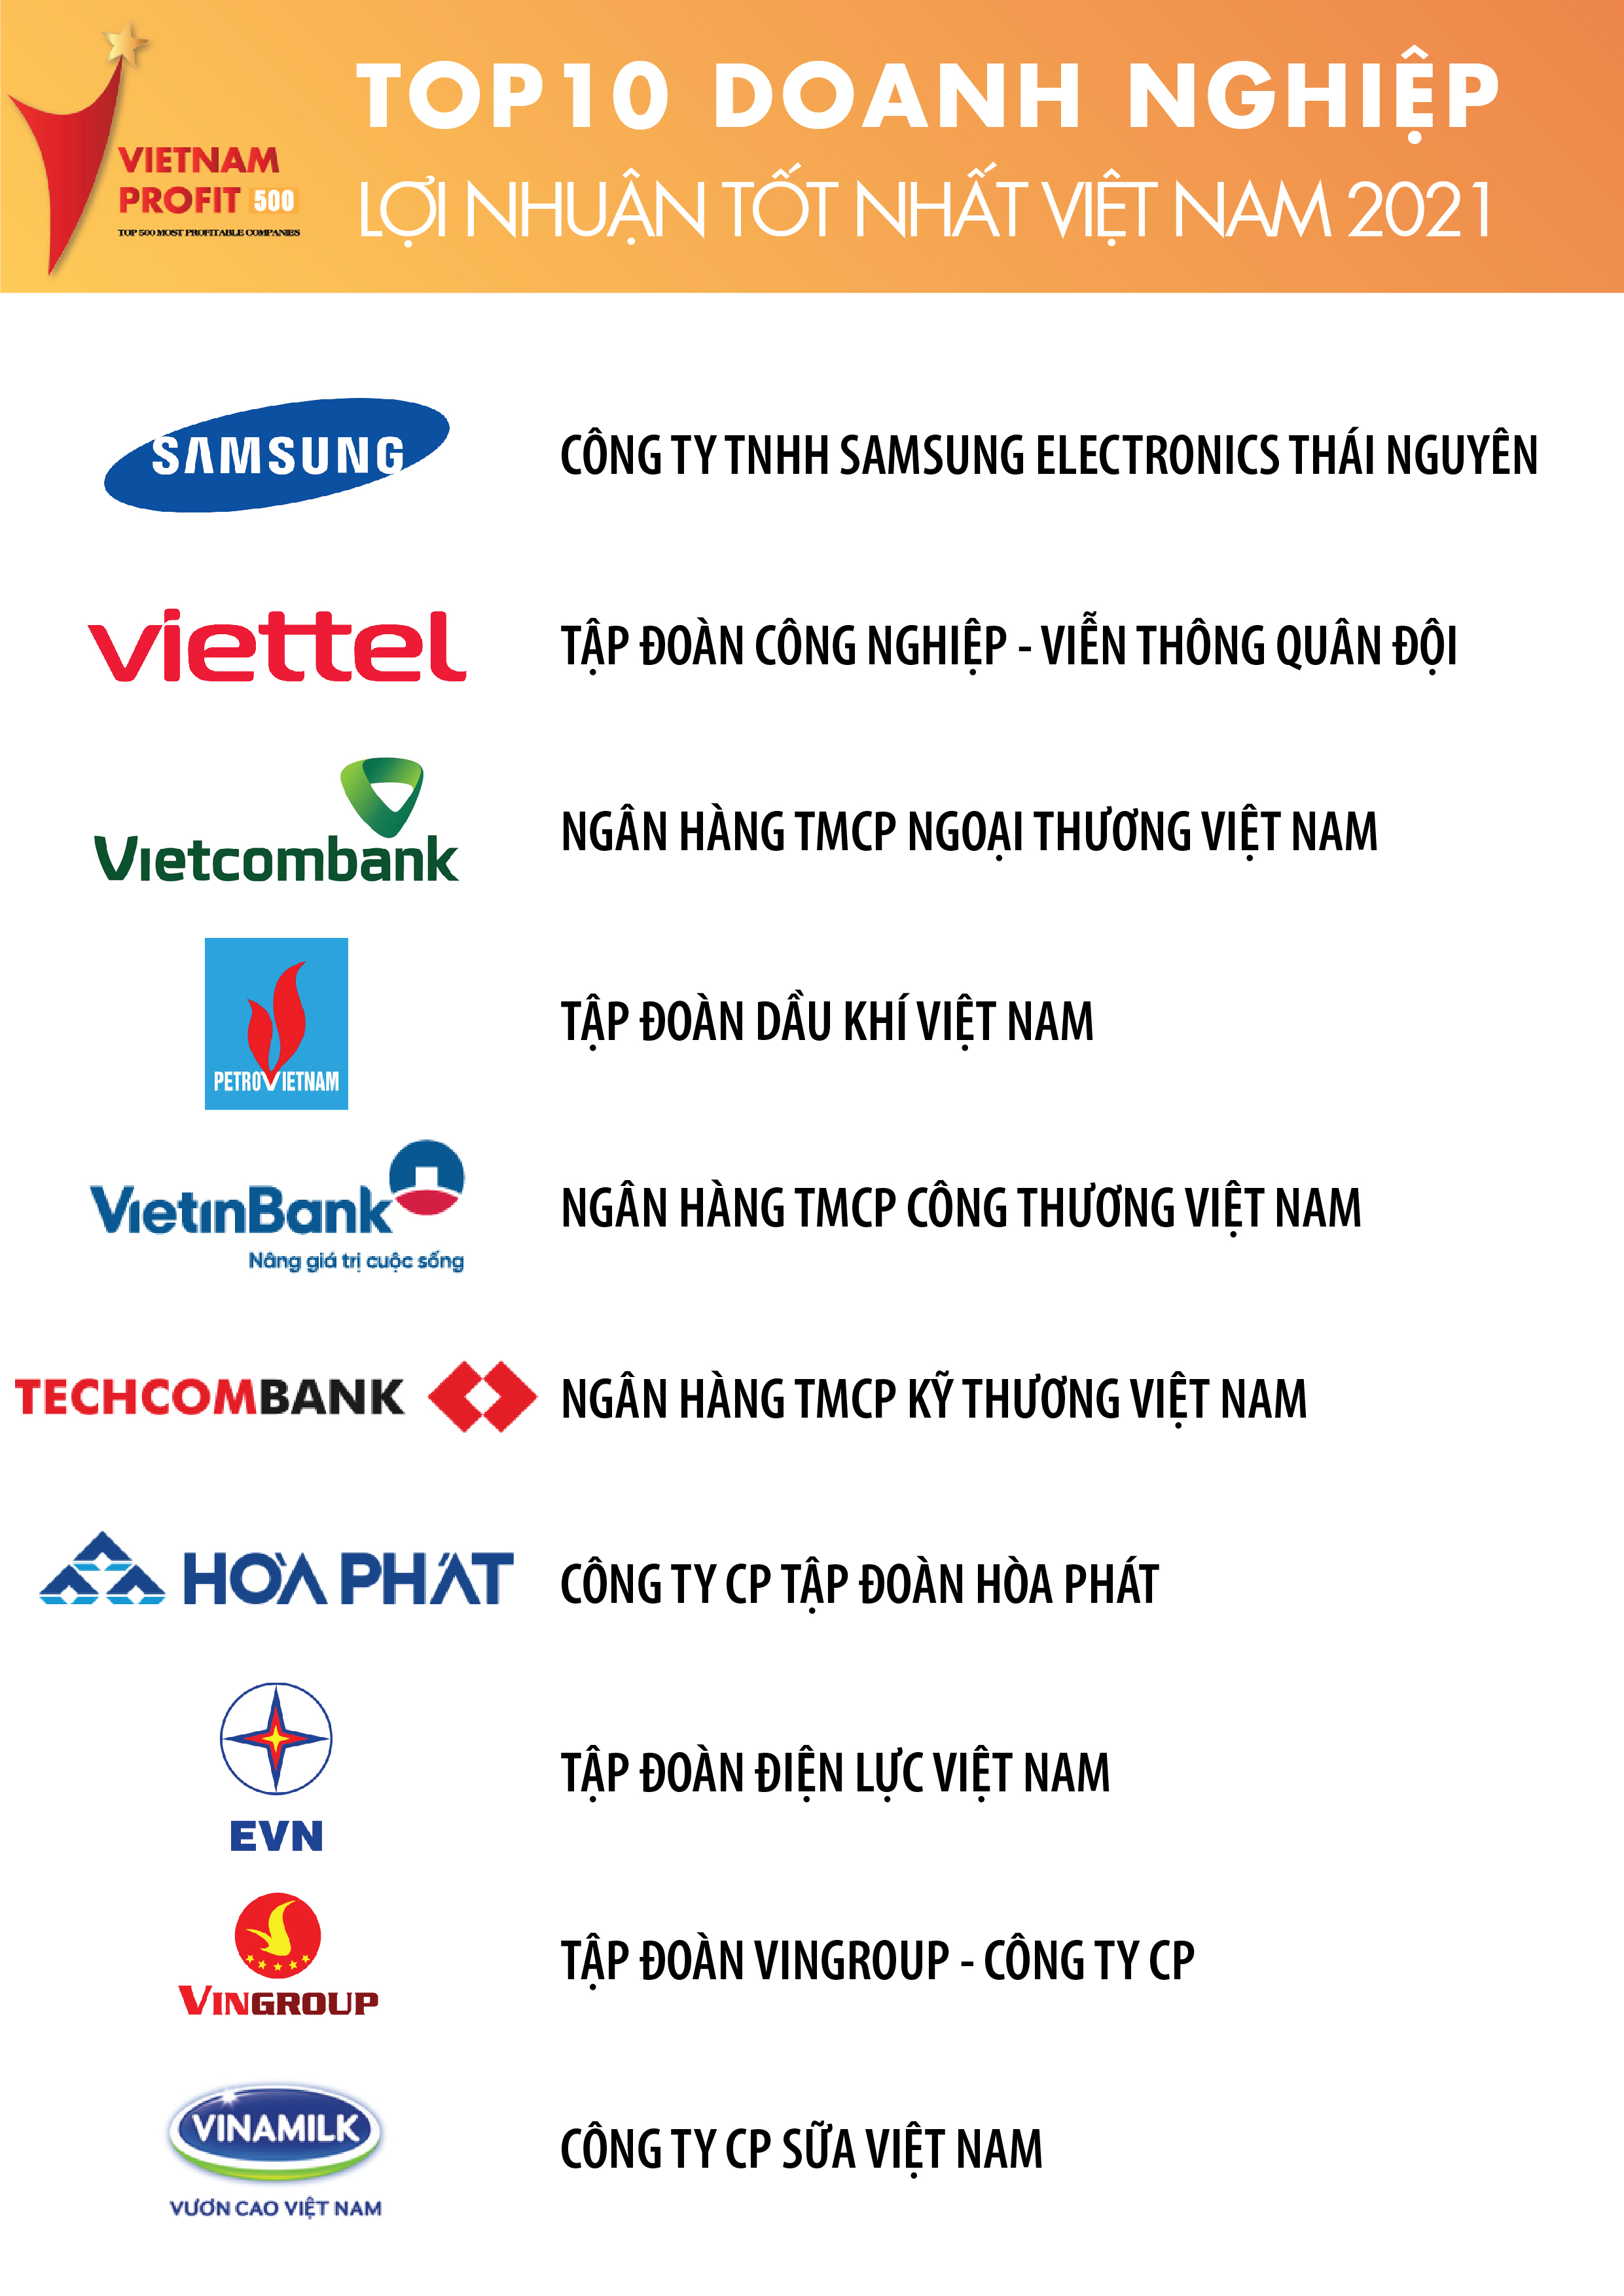 Top 500 Doanh nghiệp lợi nhuận tốt nhất Việt Nam năm 2021